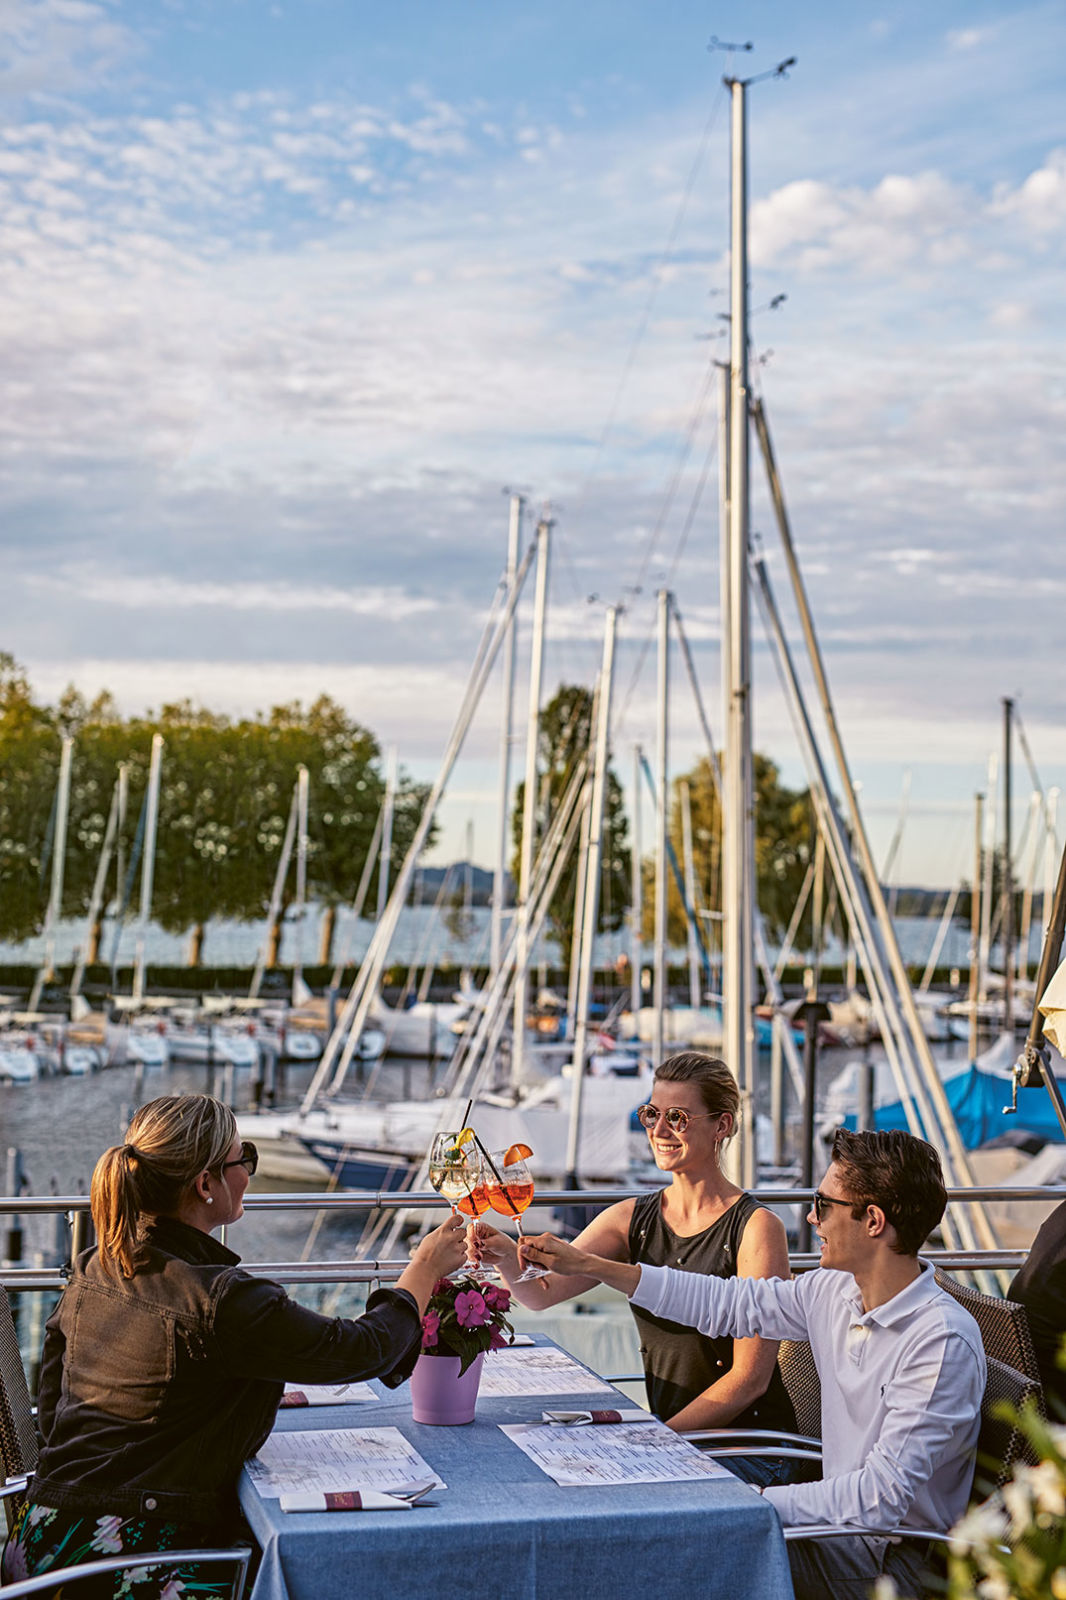 Drei Junge Leute stoßen mit ihren Drinks an. Im Hintergrund ein Hafen mit Segelbooten.